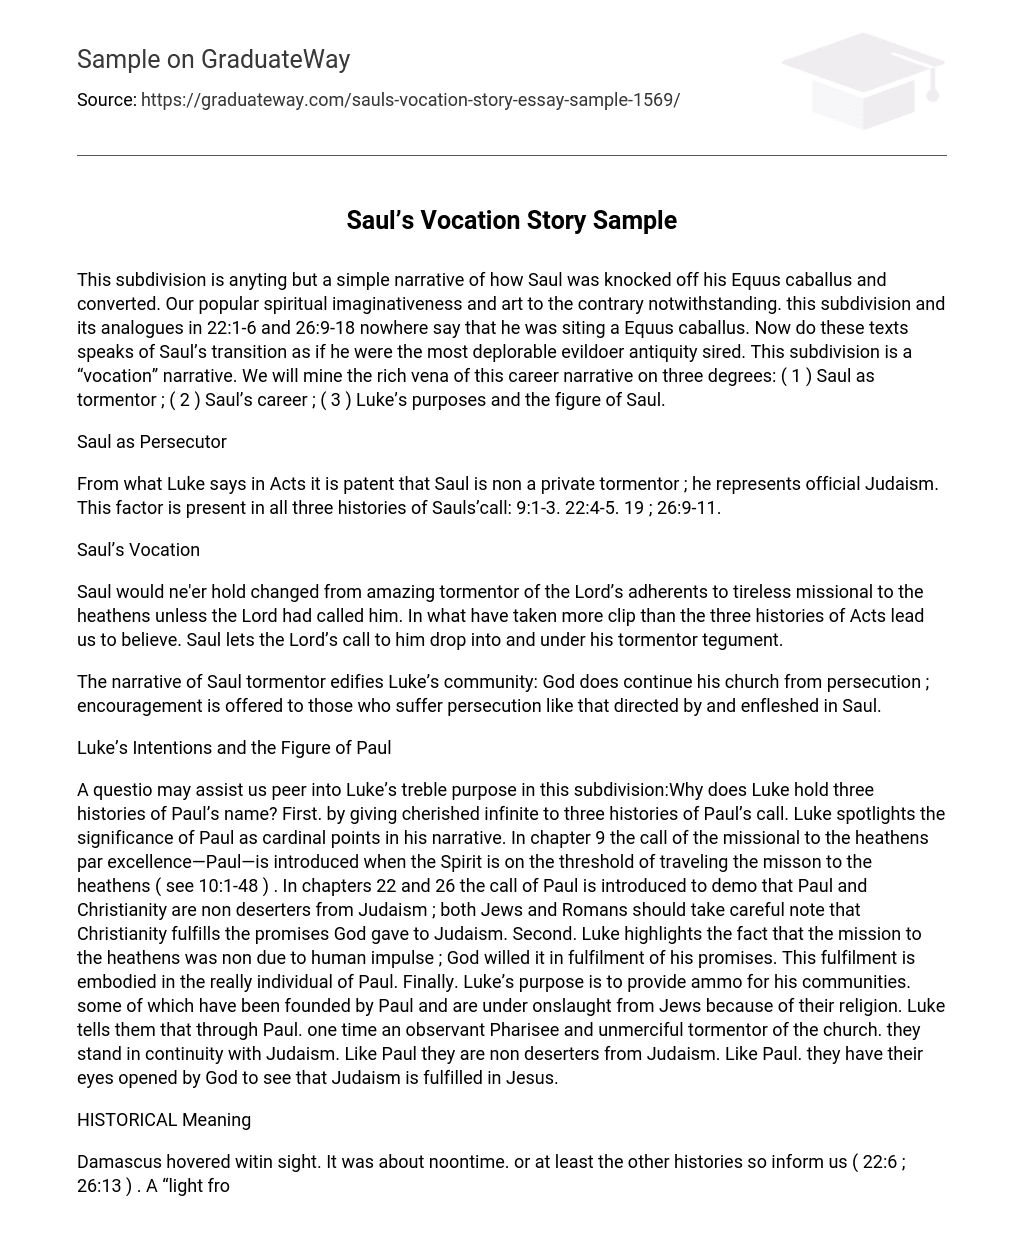 Saul’s Vocation Story Sample